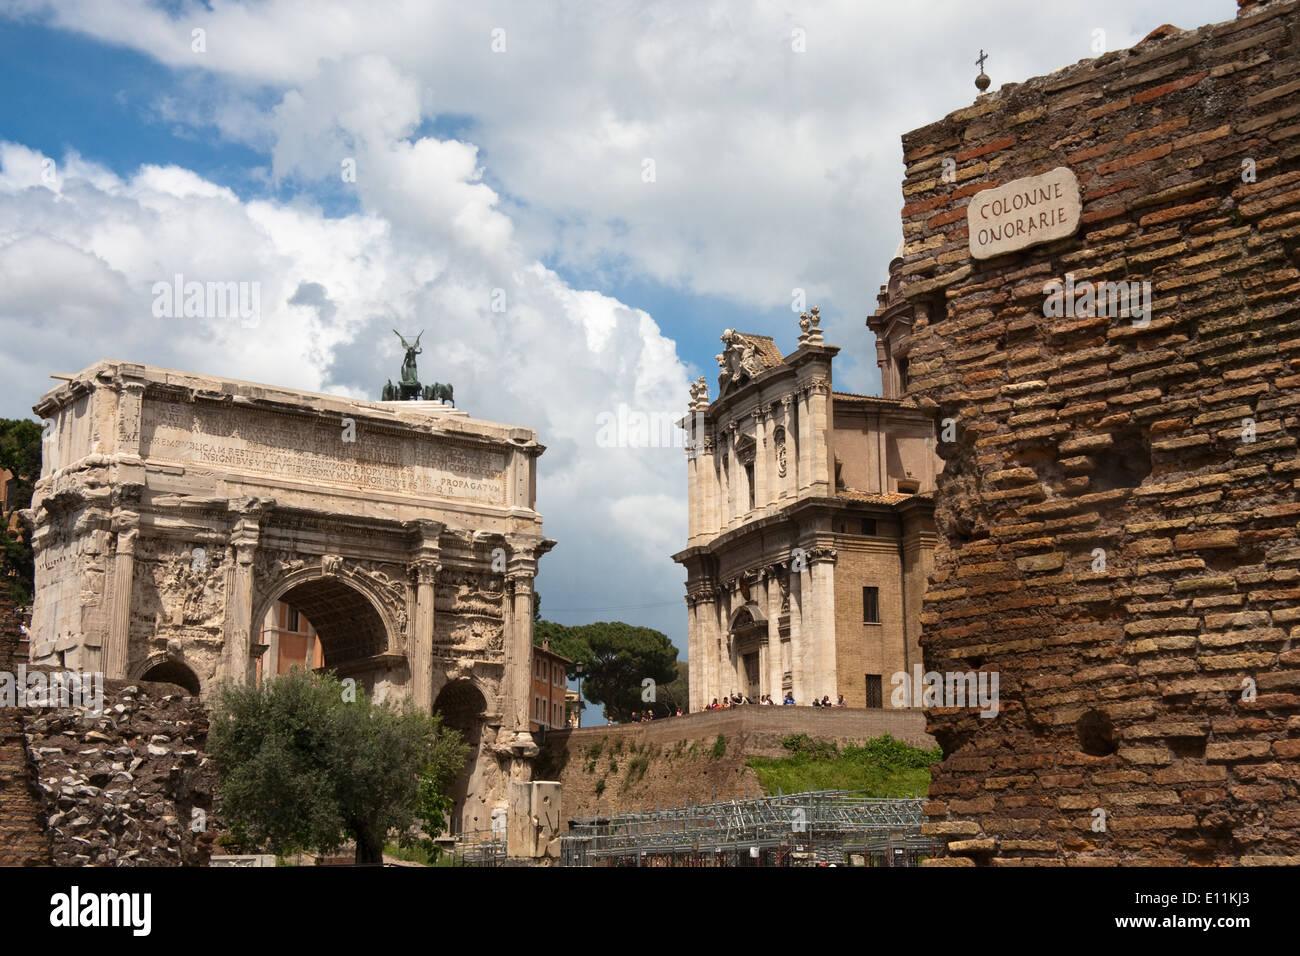 Forum Romanum, Rom, Italien - Forum Romanum, Rome, Italy Stock Photo